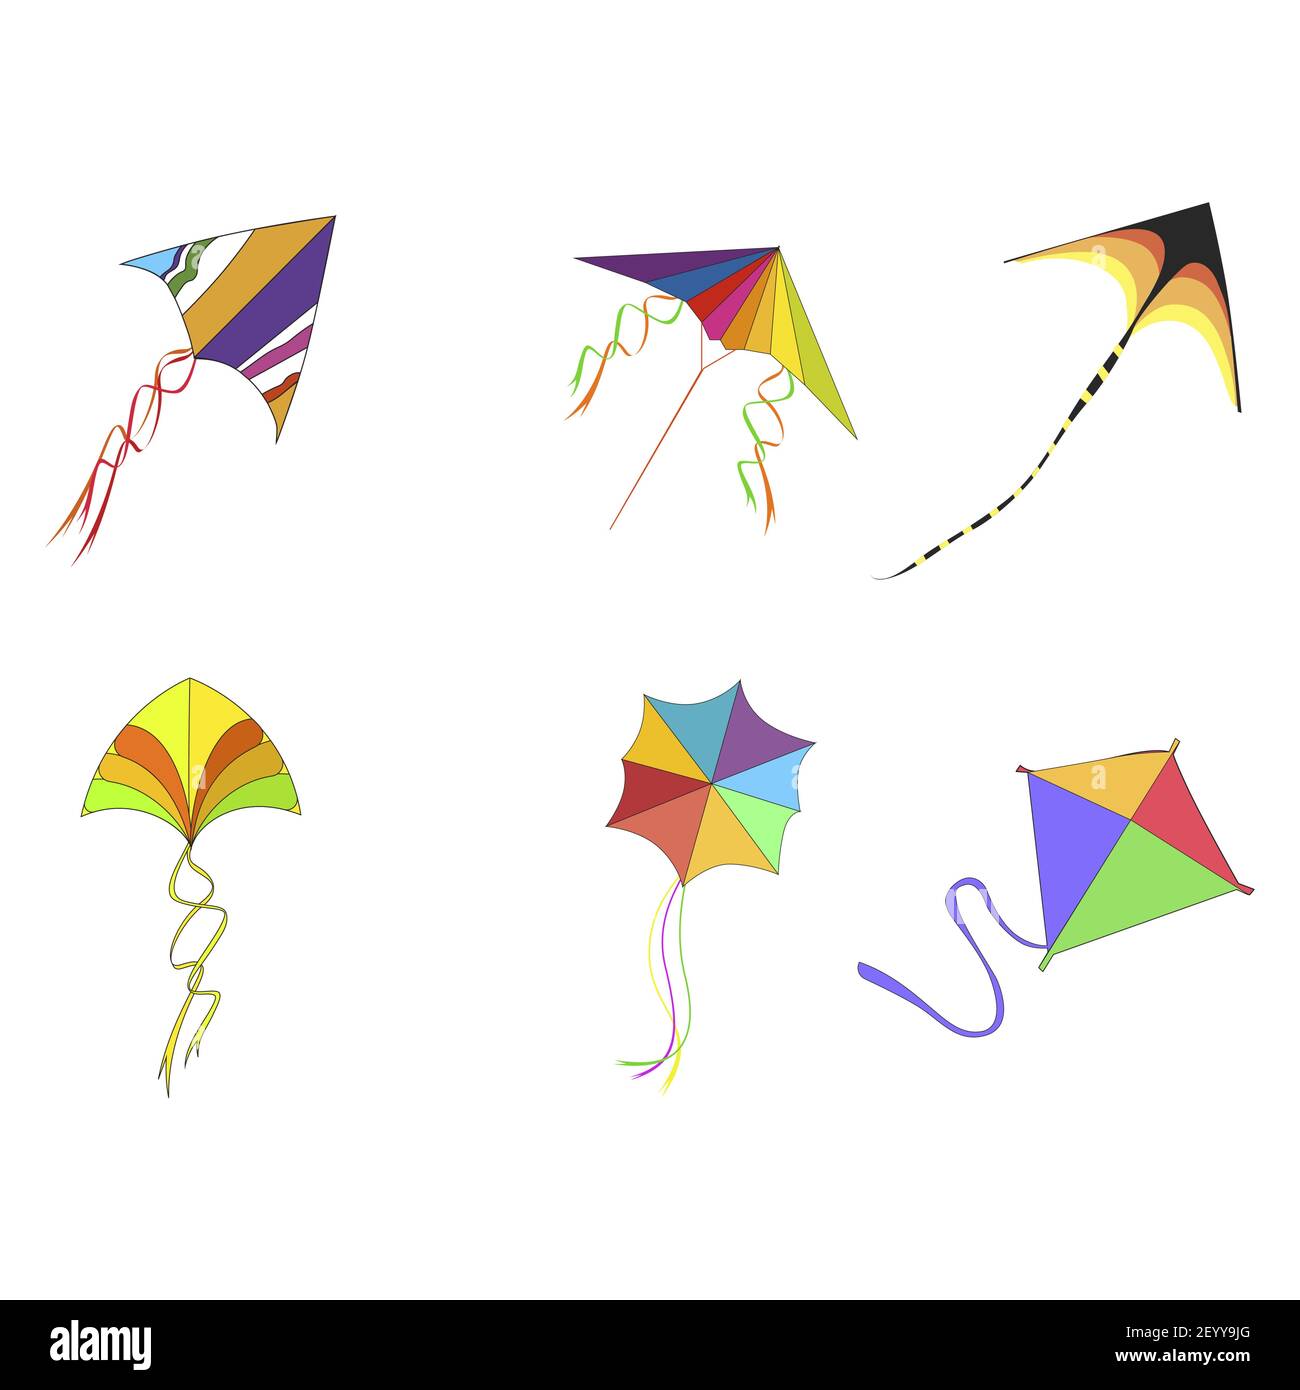 Cerfs-volants avec corde et motif coloré pour jouer aux enfants ou célébrer makar sankranti, activité de plein air dans l'enfance, illustration vectorielle Illustration de Vecteur